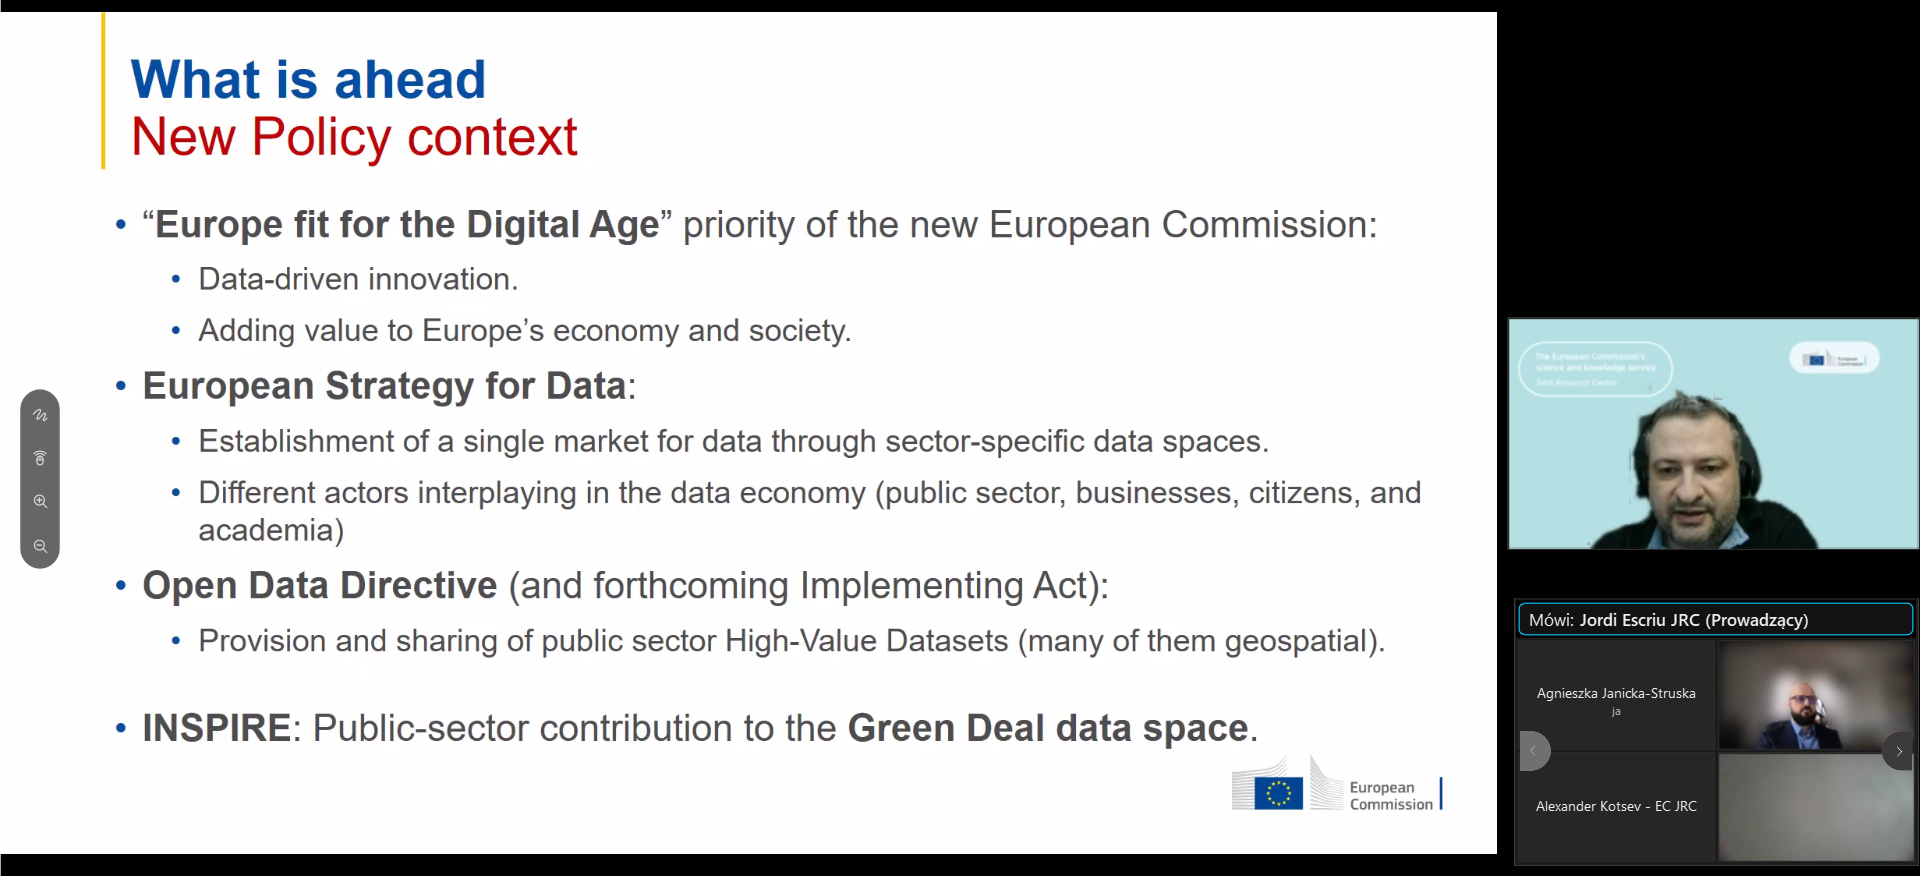 Zrzut ekranu z programu do prowadzenia konferencji online. Po lewej stronie fragment prezentacji przedstawiający plany Komisji Europejskiej dotyczące polityki względem danych przestrzennych, a po prawej prowadzący spotkanie.